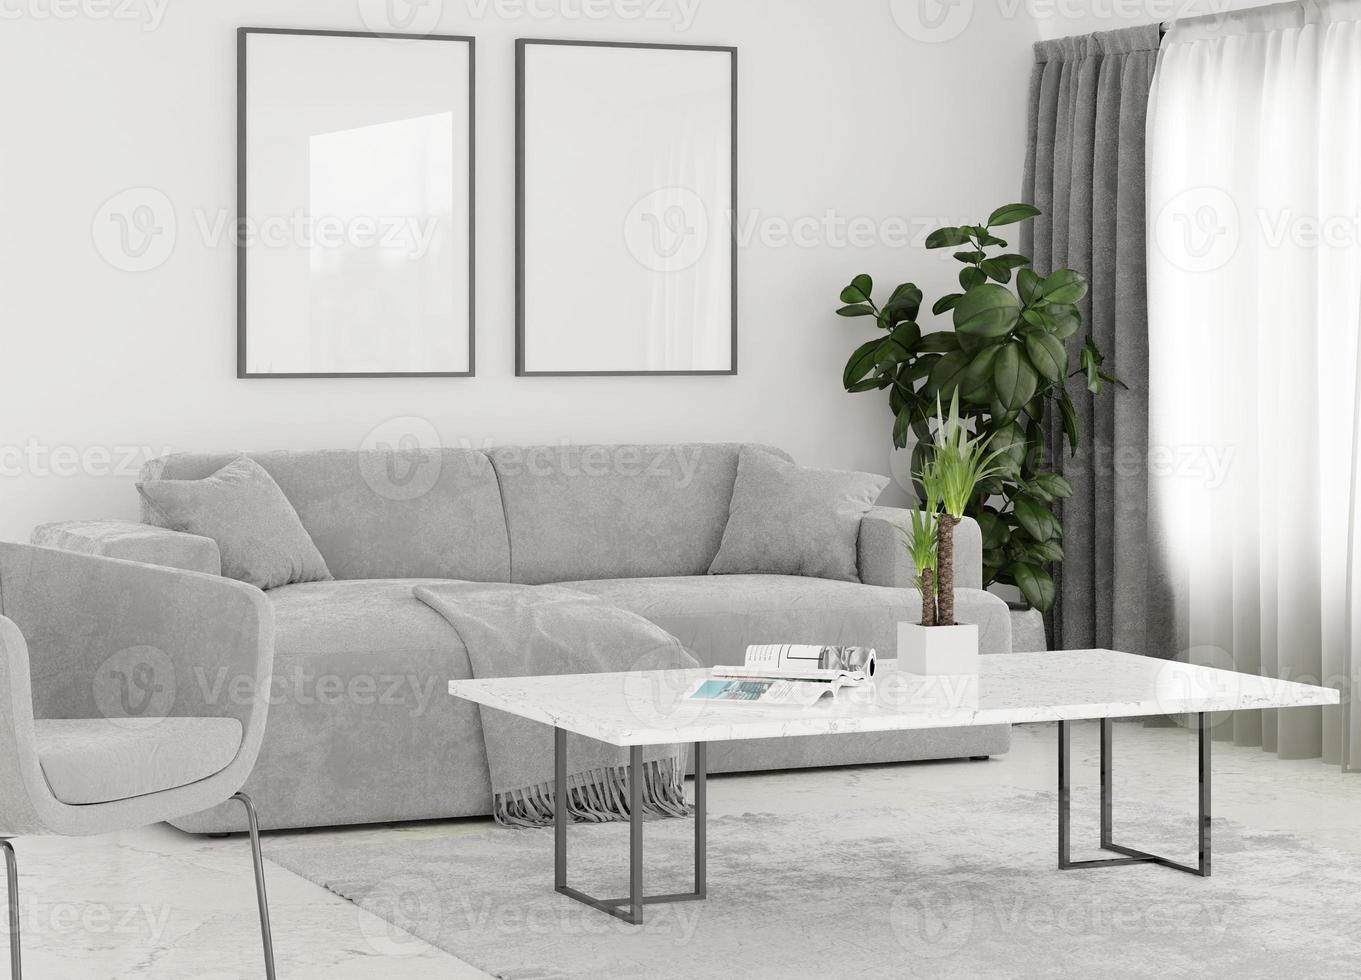 duk ram foto mockup i rent minimalistiskt rum med brun soffa och växt 3d rendering